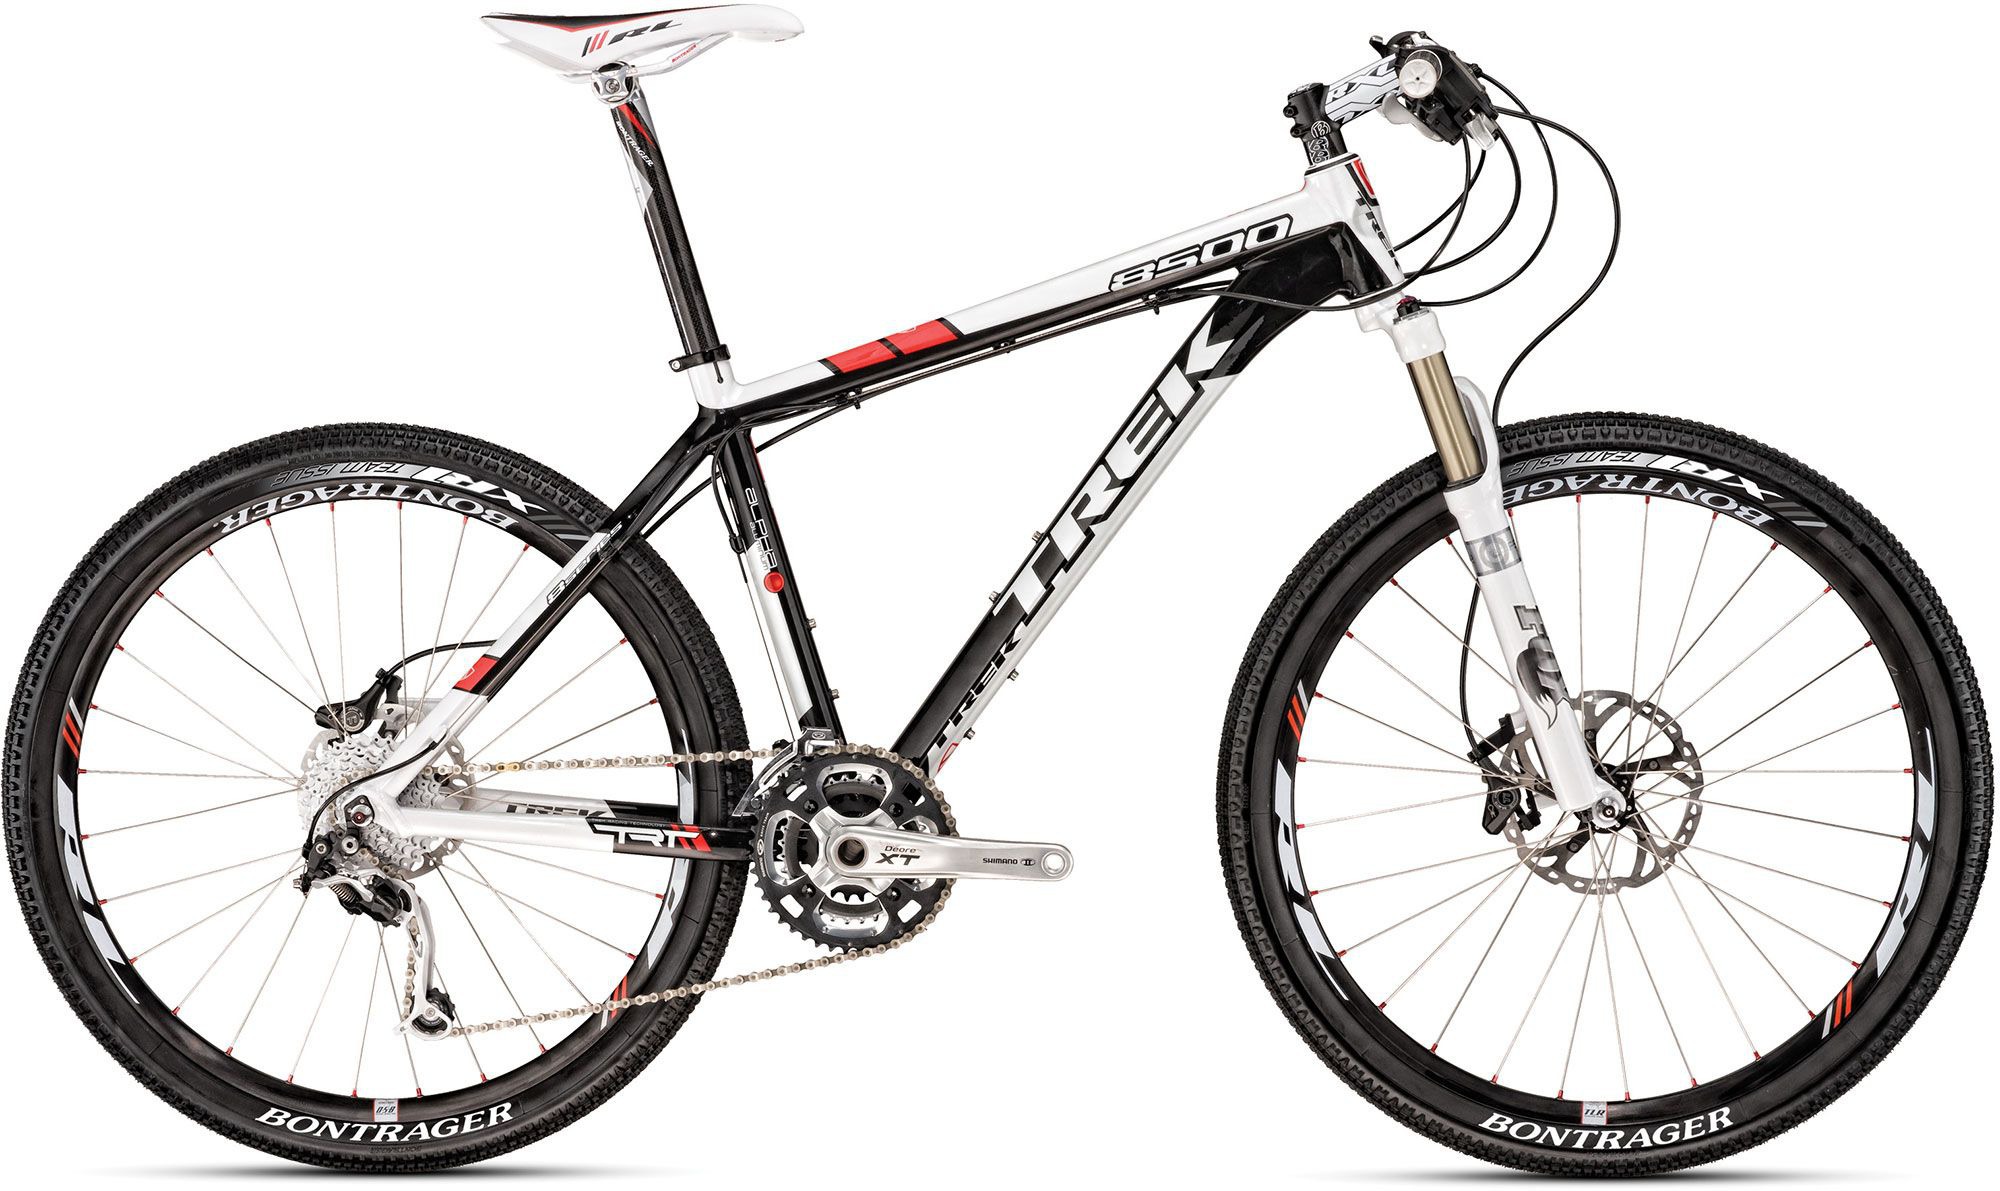 2010 Trek 8500 - Bicycle Details 